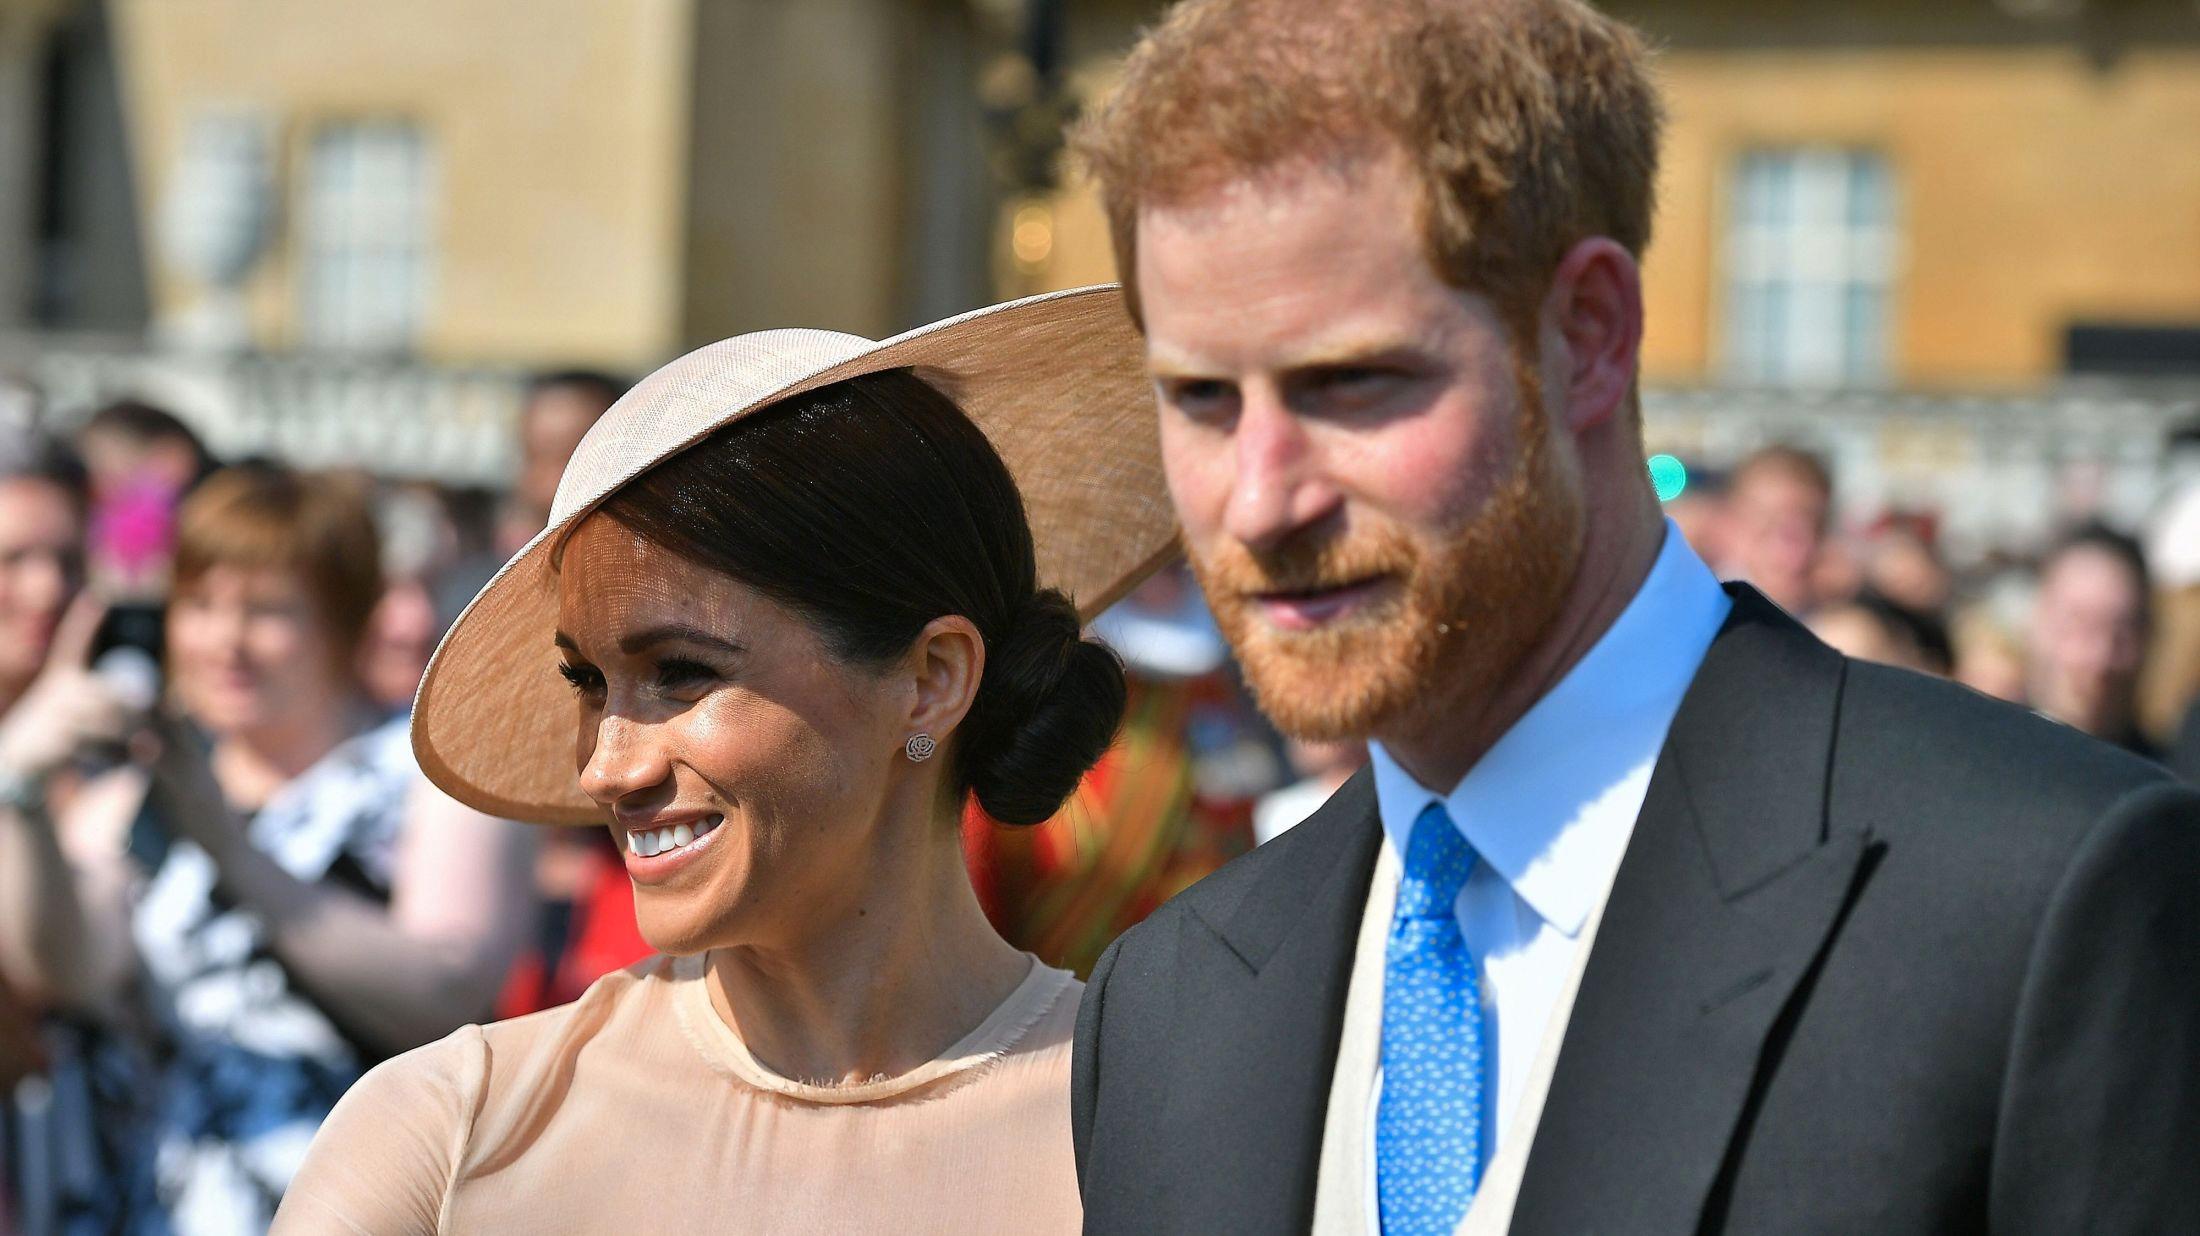 NYGIFT: Her er hertuginnen og hertugen av Sussex på sitt første offentlige oppdrag etter giftermålet.Foto: AFP